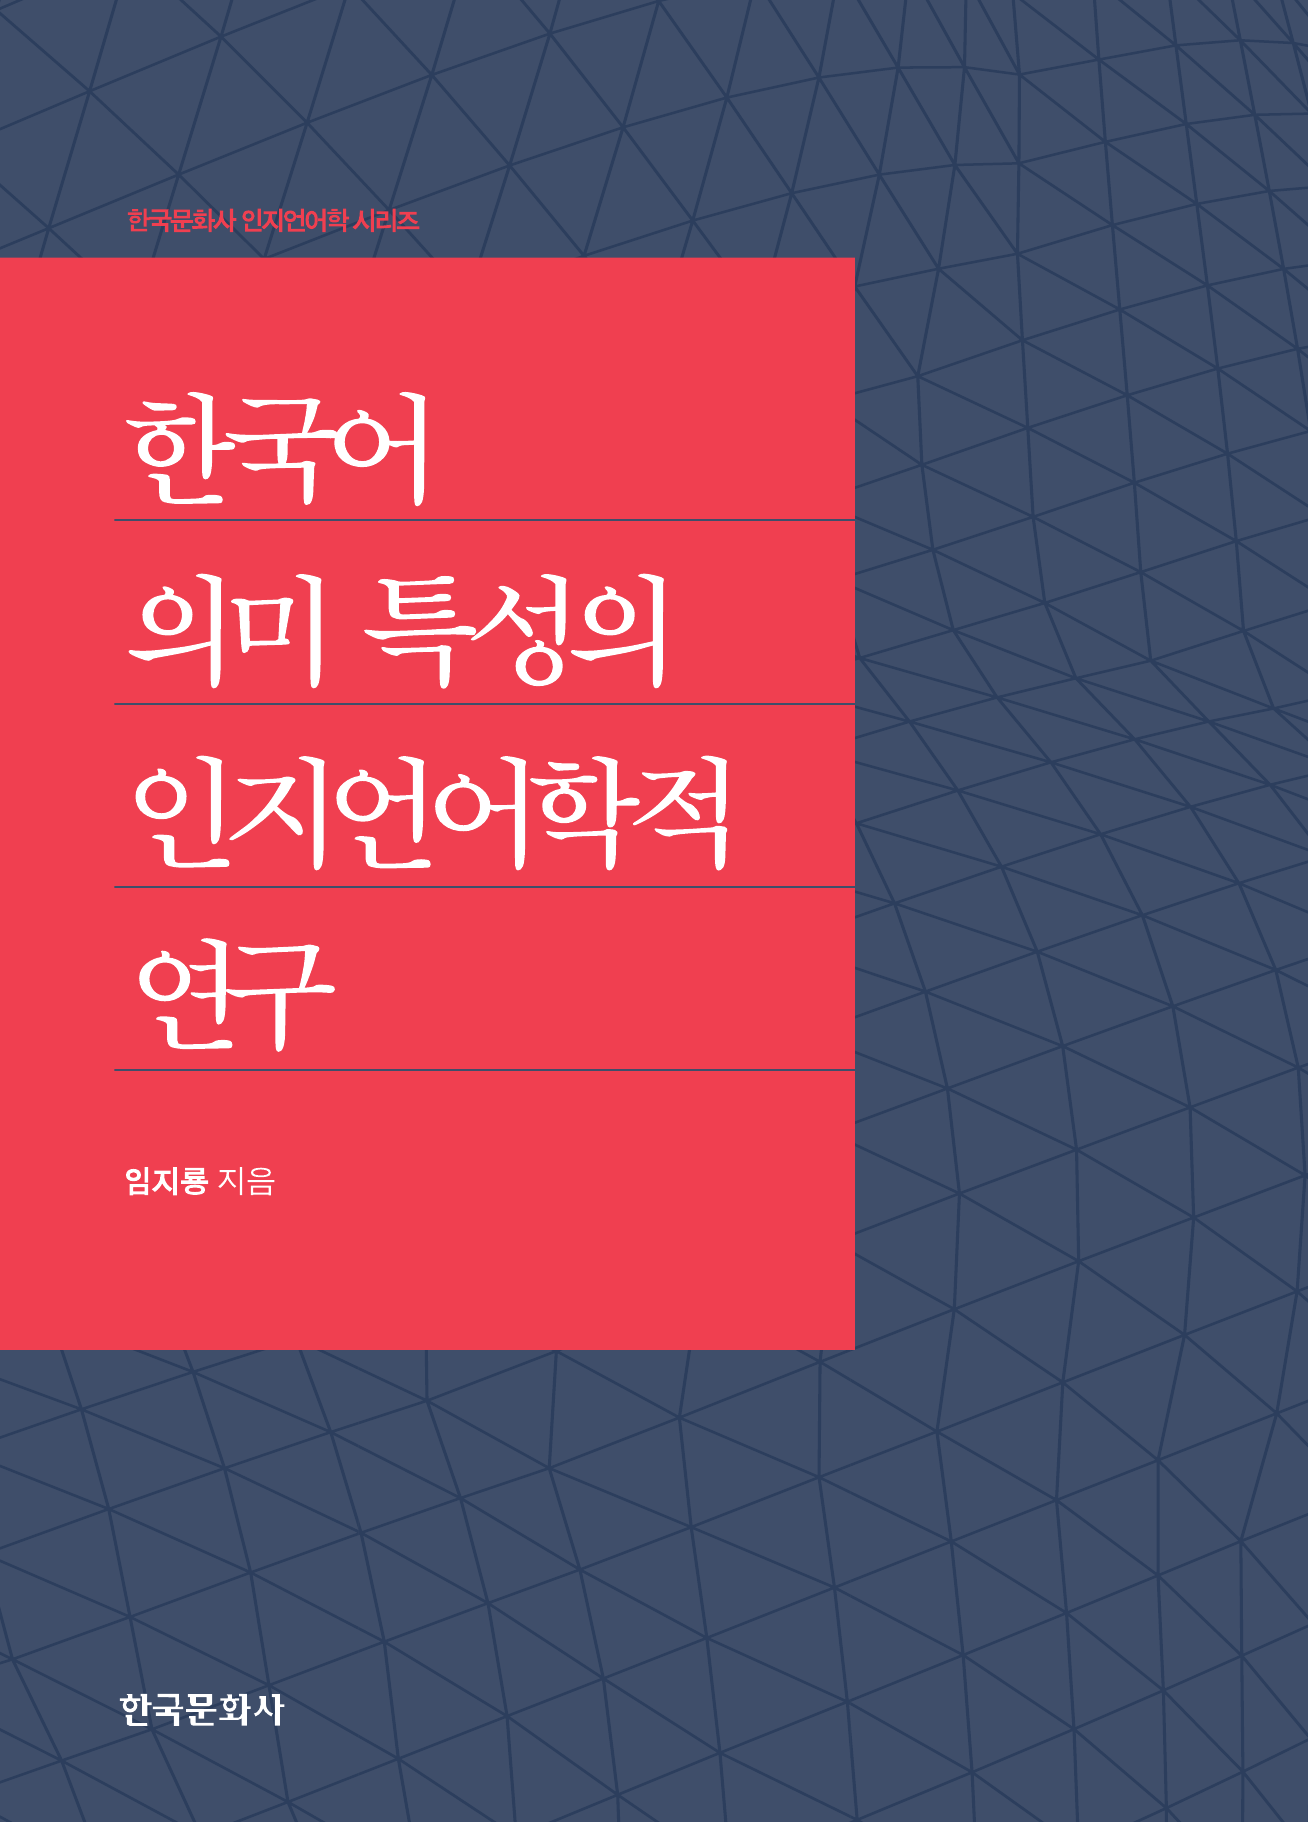 한국어 의미 특성의 인지언어학적 연구